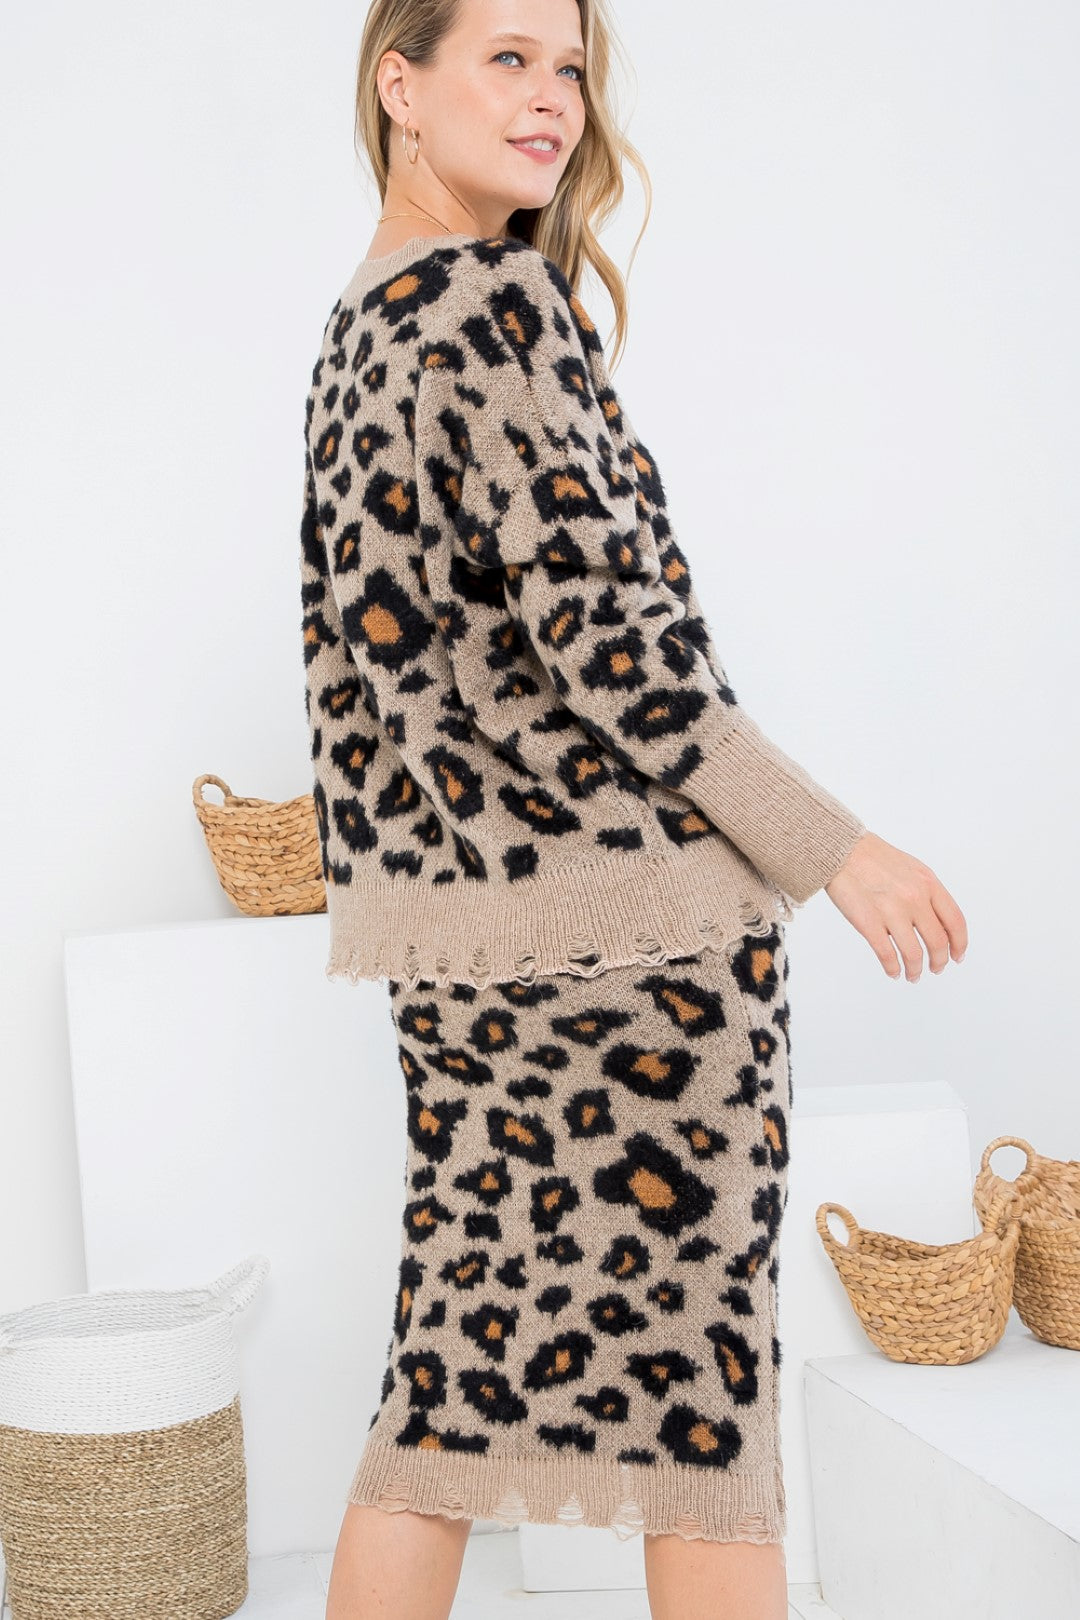 Leopard vintage V-neck Cardigan Dress Sweater Set